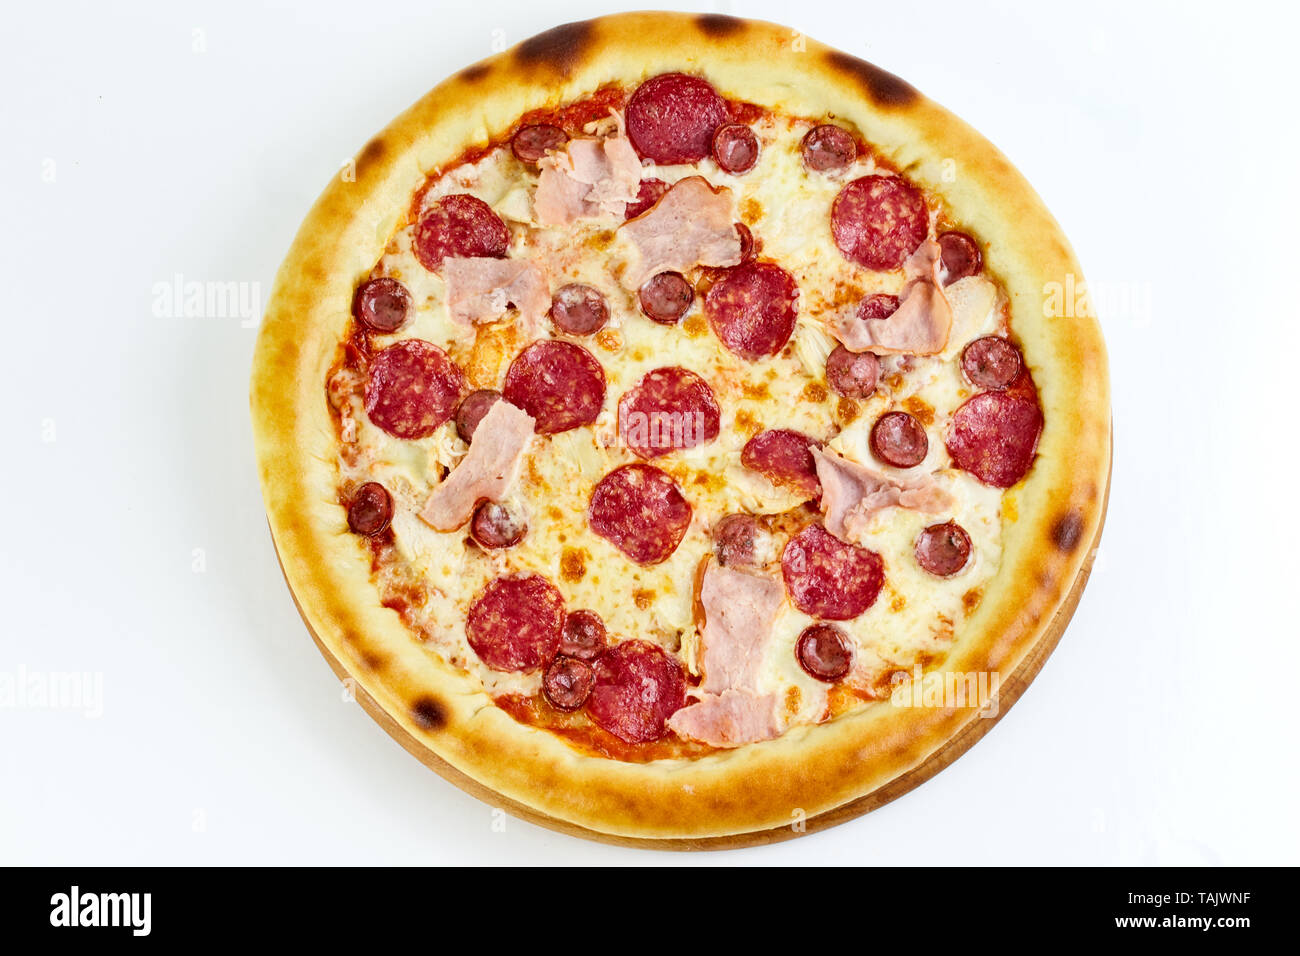 Lecker lecker Pizza mit Tomatensauce, Mozzarella, Peperoni, Huhn, balyk, Jagd Würstchen auf einem weißen Hintergrund. Italienisches Essen. Fast food. Stockfoto